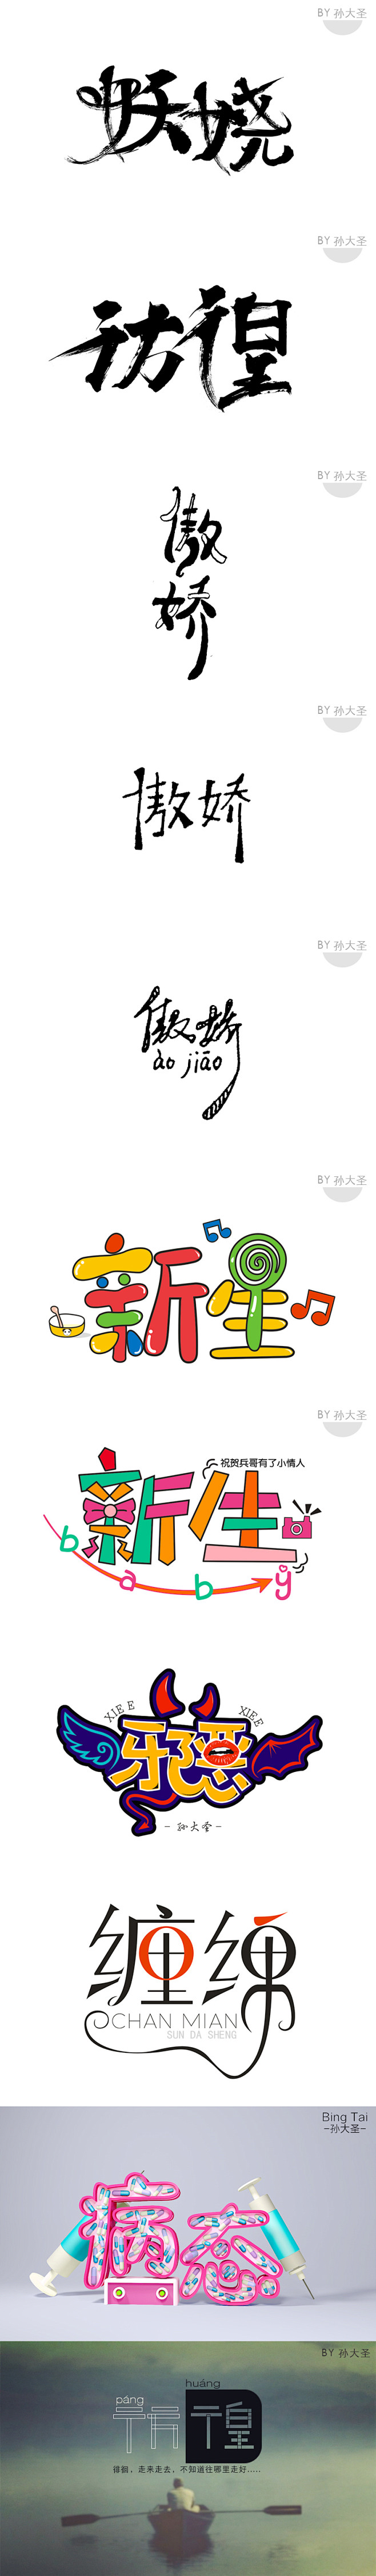 @大圣中的战斗菊：前几期的字体设计作业。